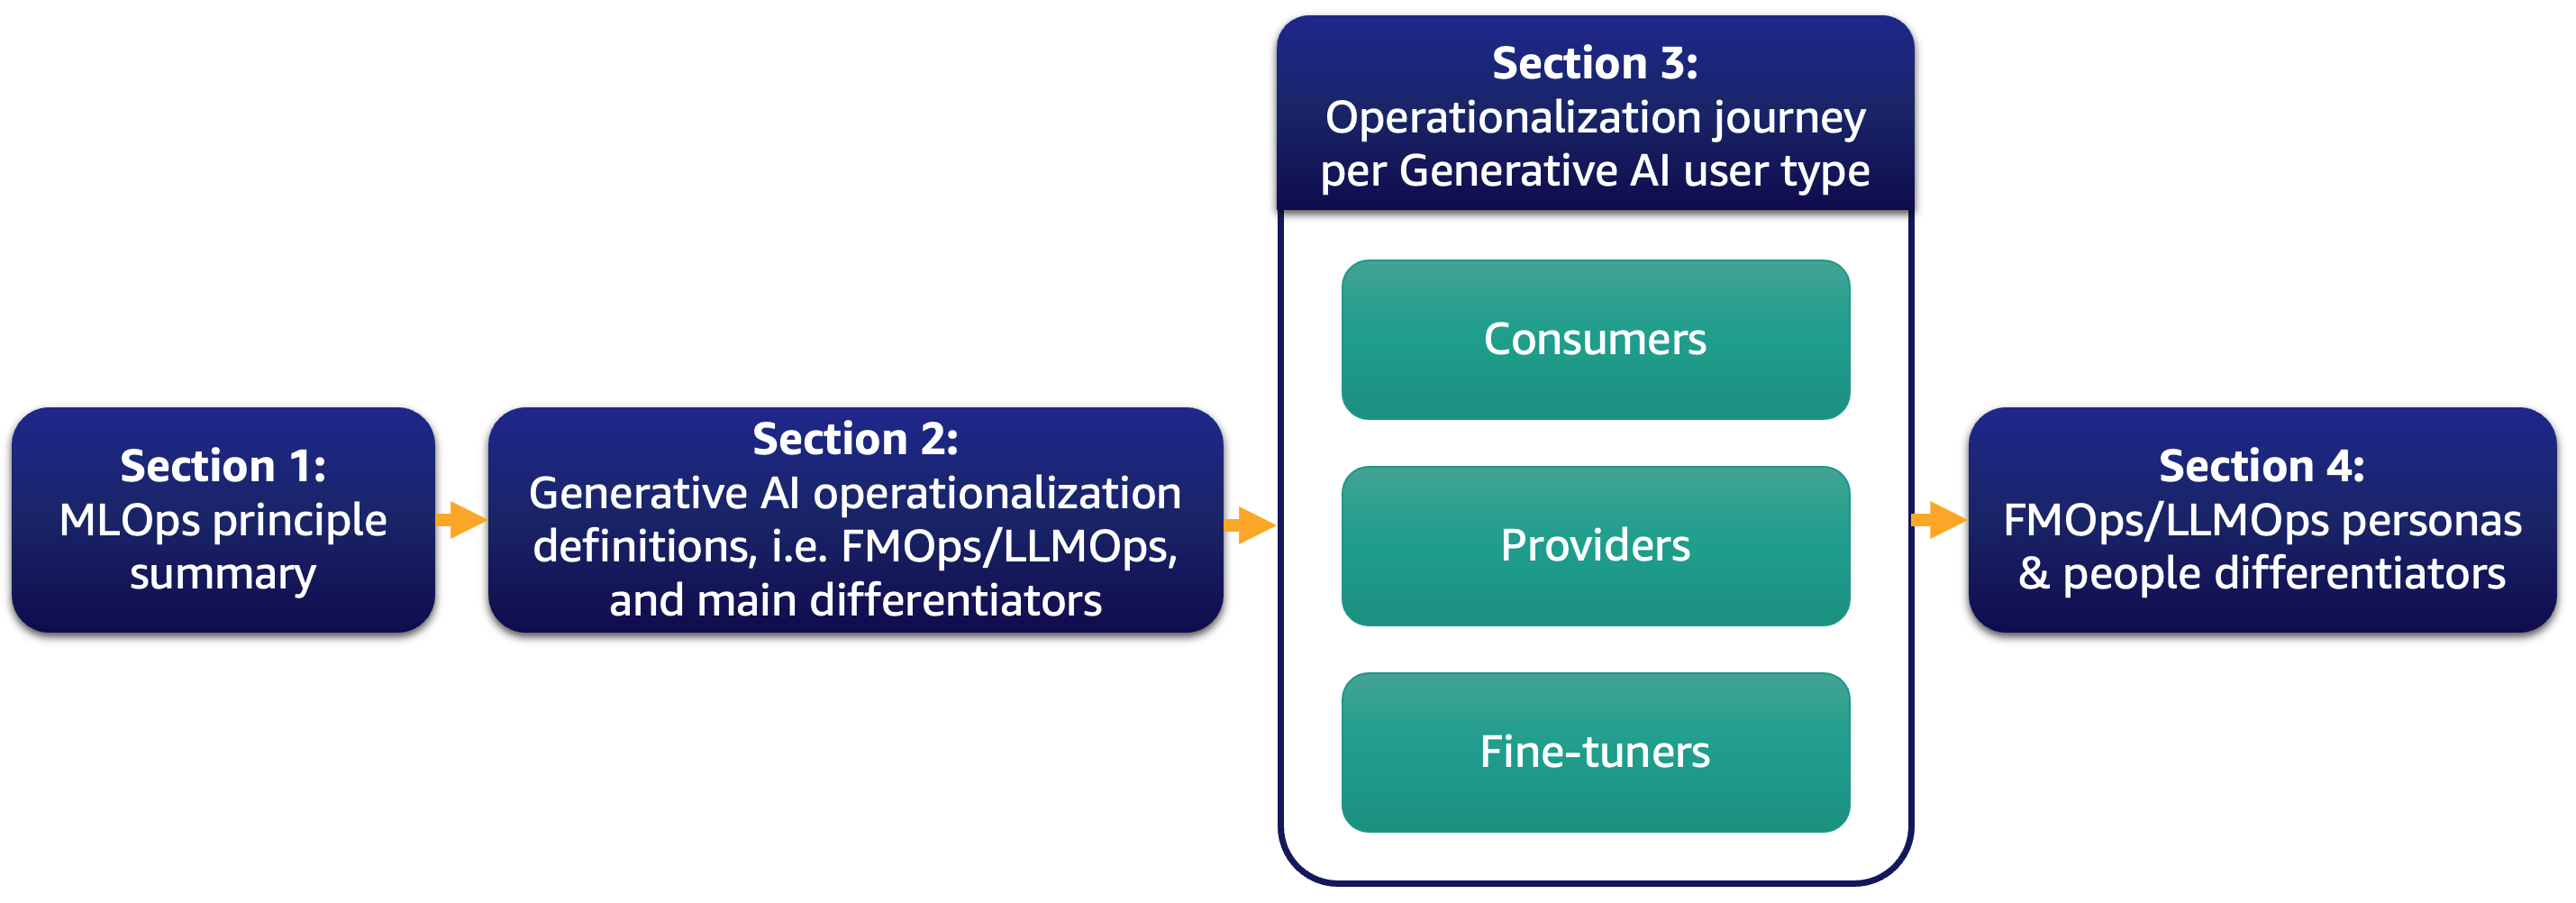 FMOps/LLMOps: rendere operativa l'IA generativa e le differenze con MLOps | Servizi Web di Amazon